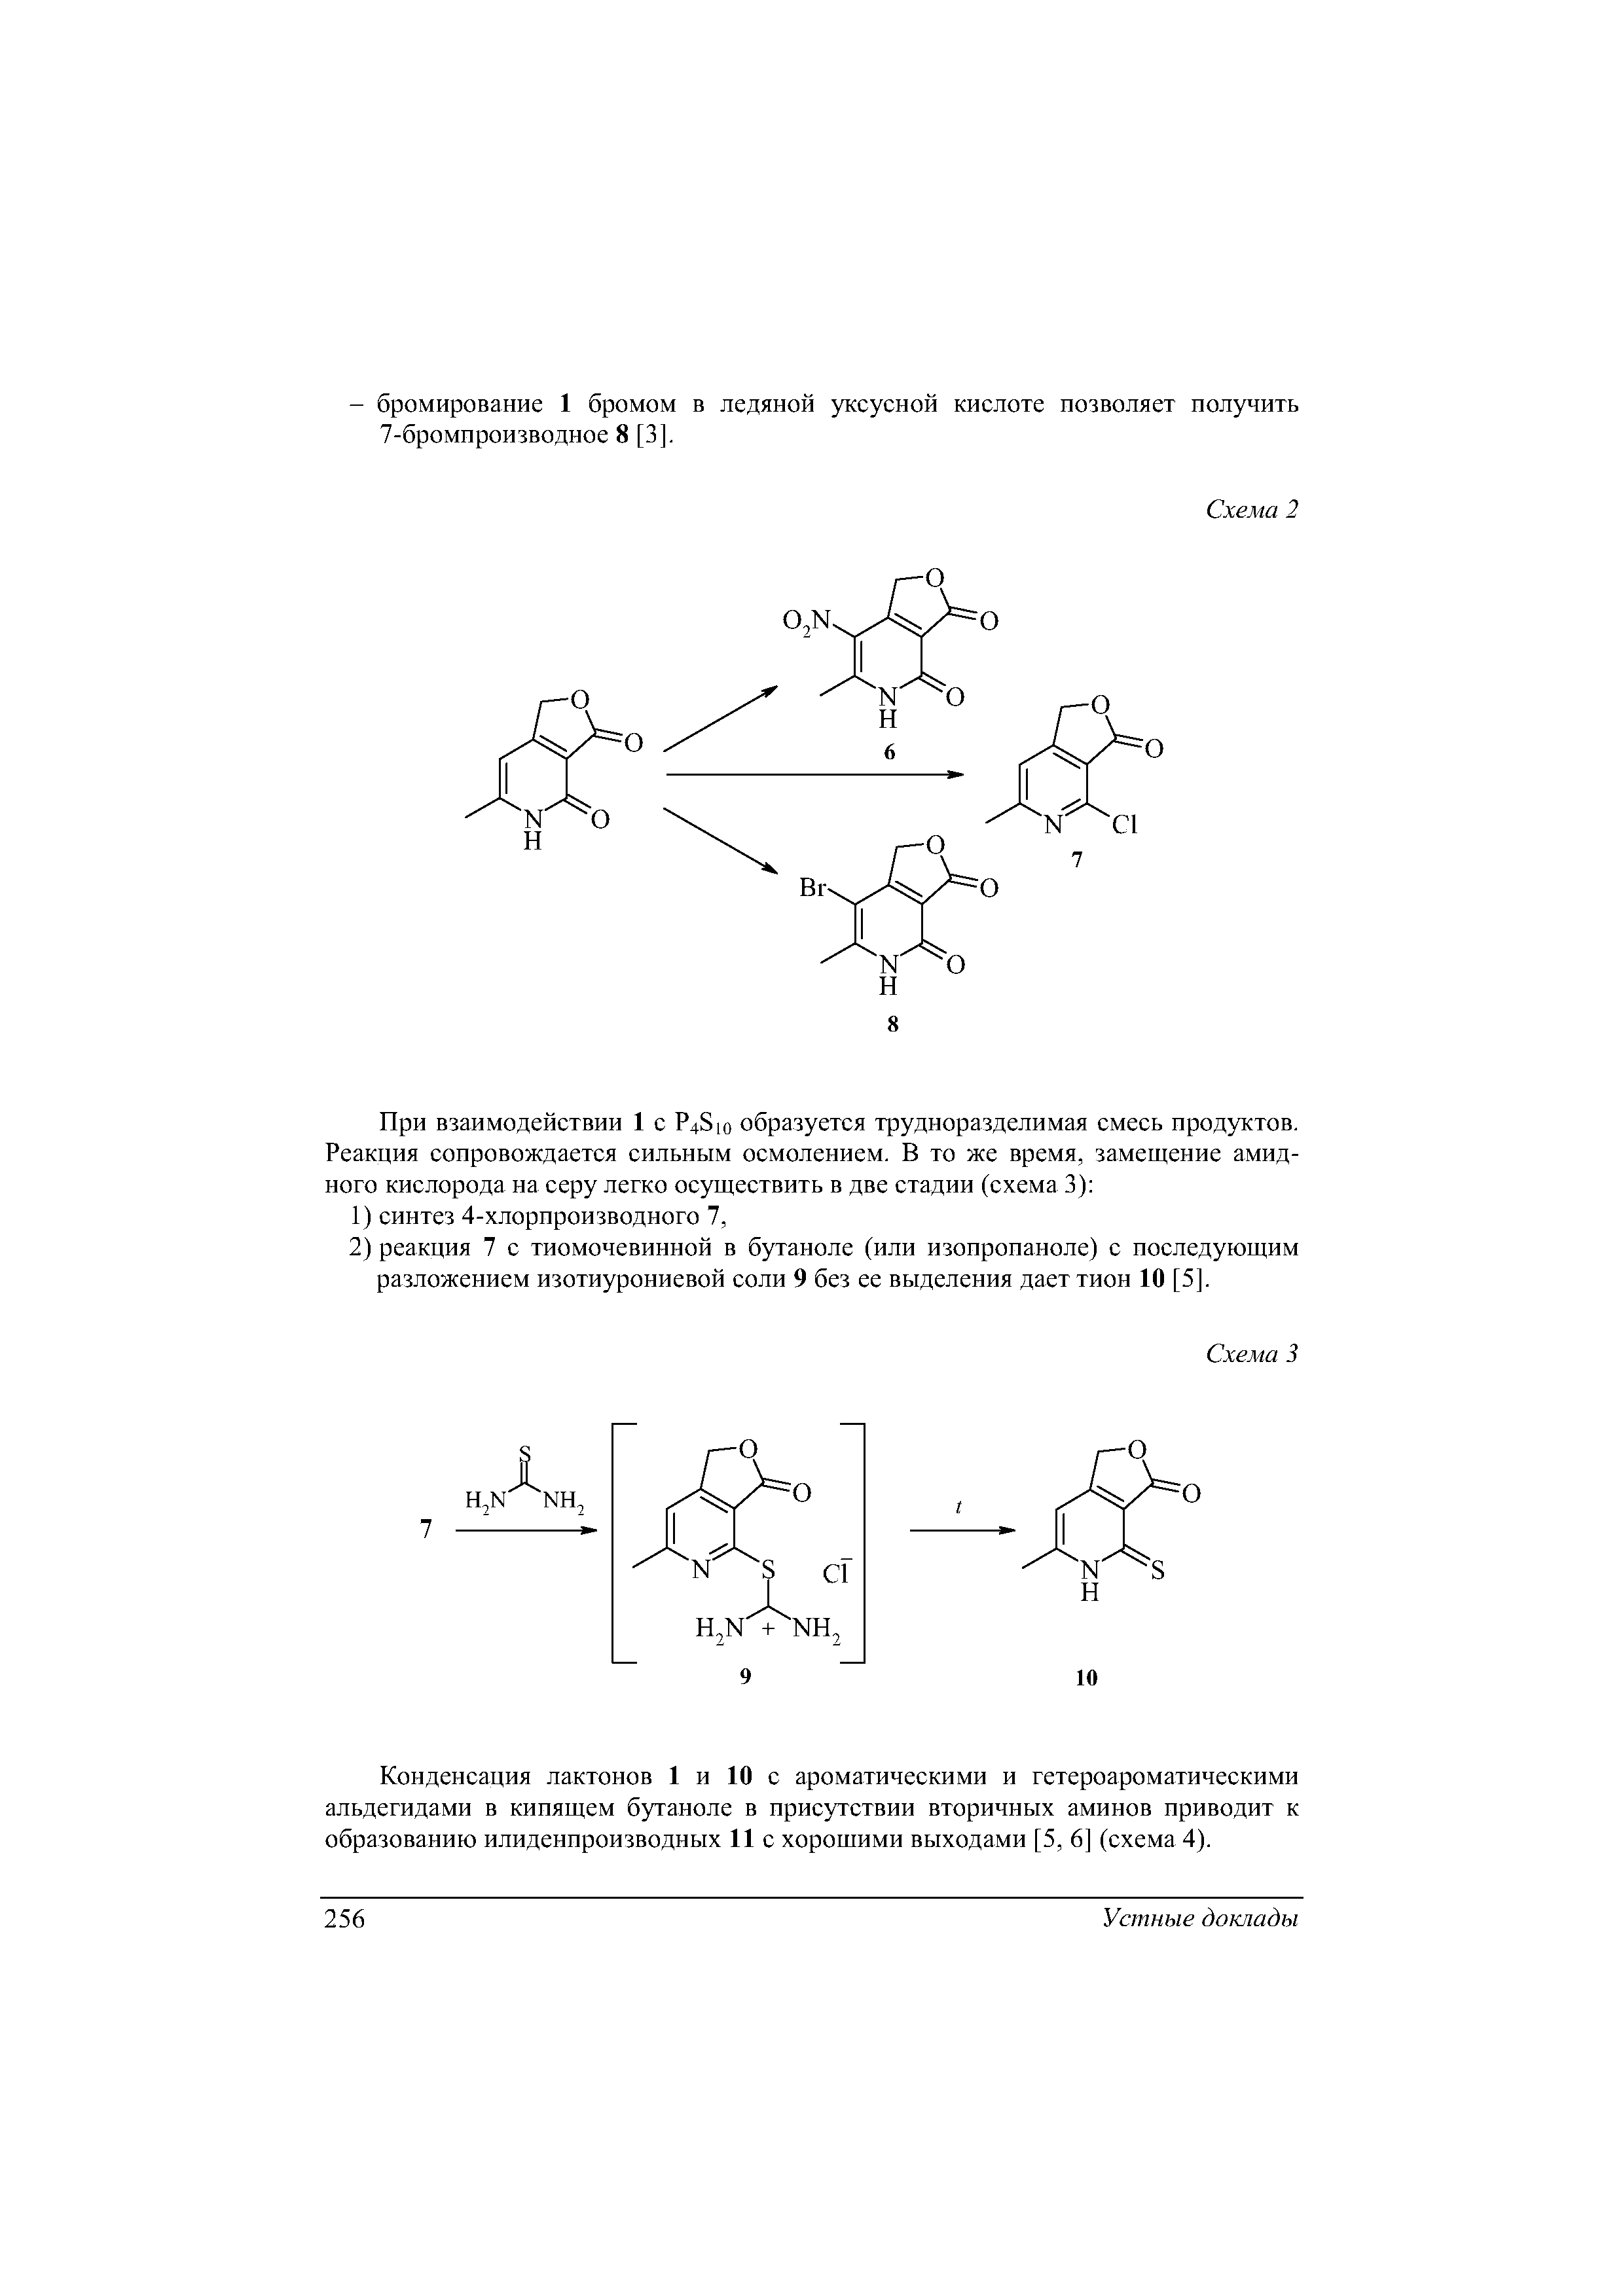 Конденсация лактонов 1 и 10 с ароматическими и гетероароматическими альдегидами в кипящем бутаноле в присутствии вторичных аминов приводит к образованию илиденпроизводных 11 с хорошими выходами [5, 6] (схема 4).